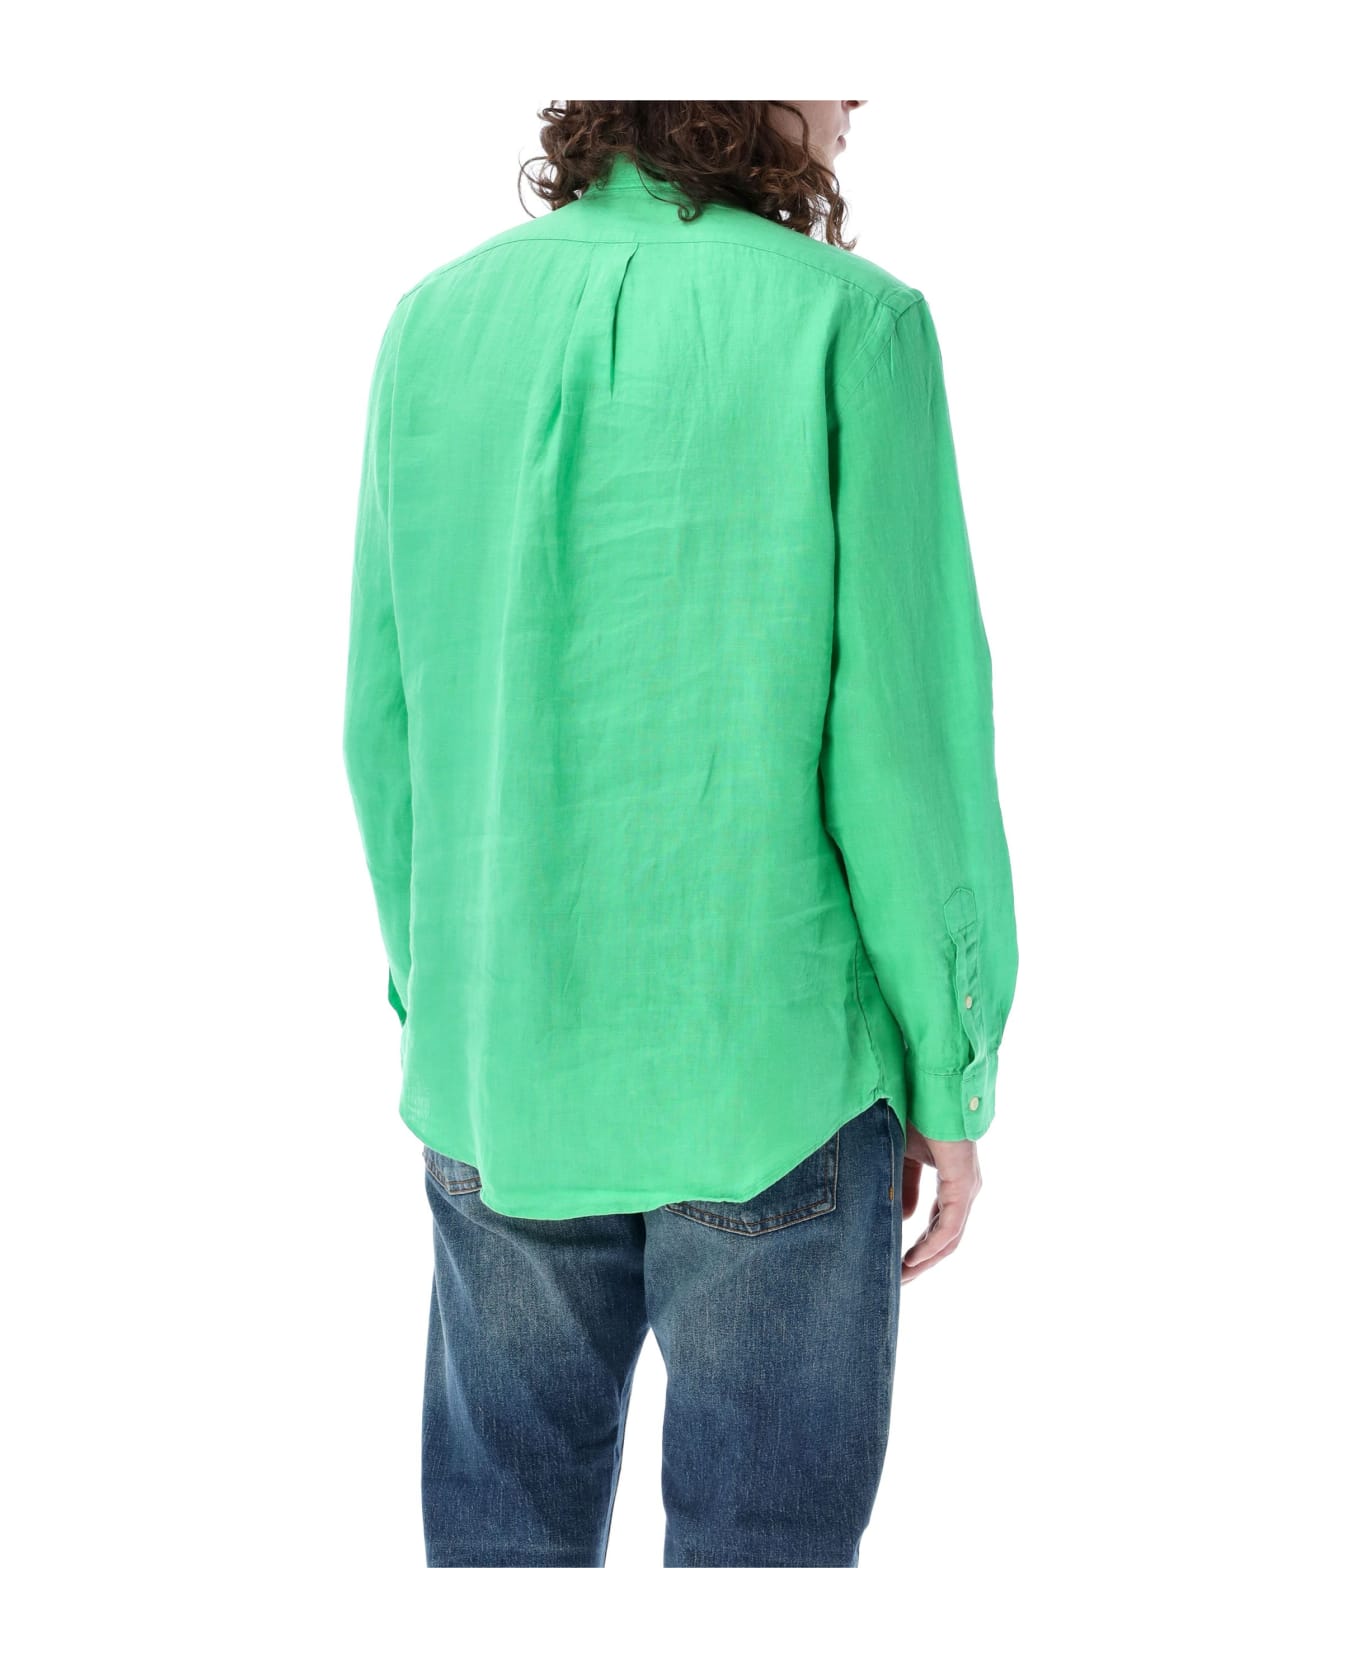 Ralph Lauren Custom Fit Shirt - green